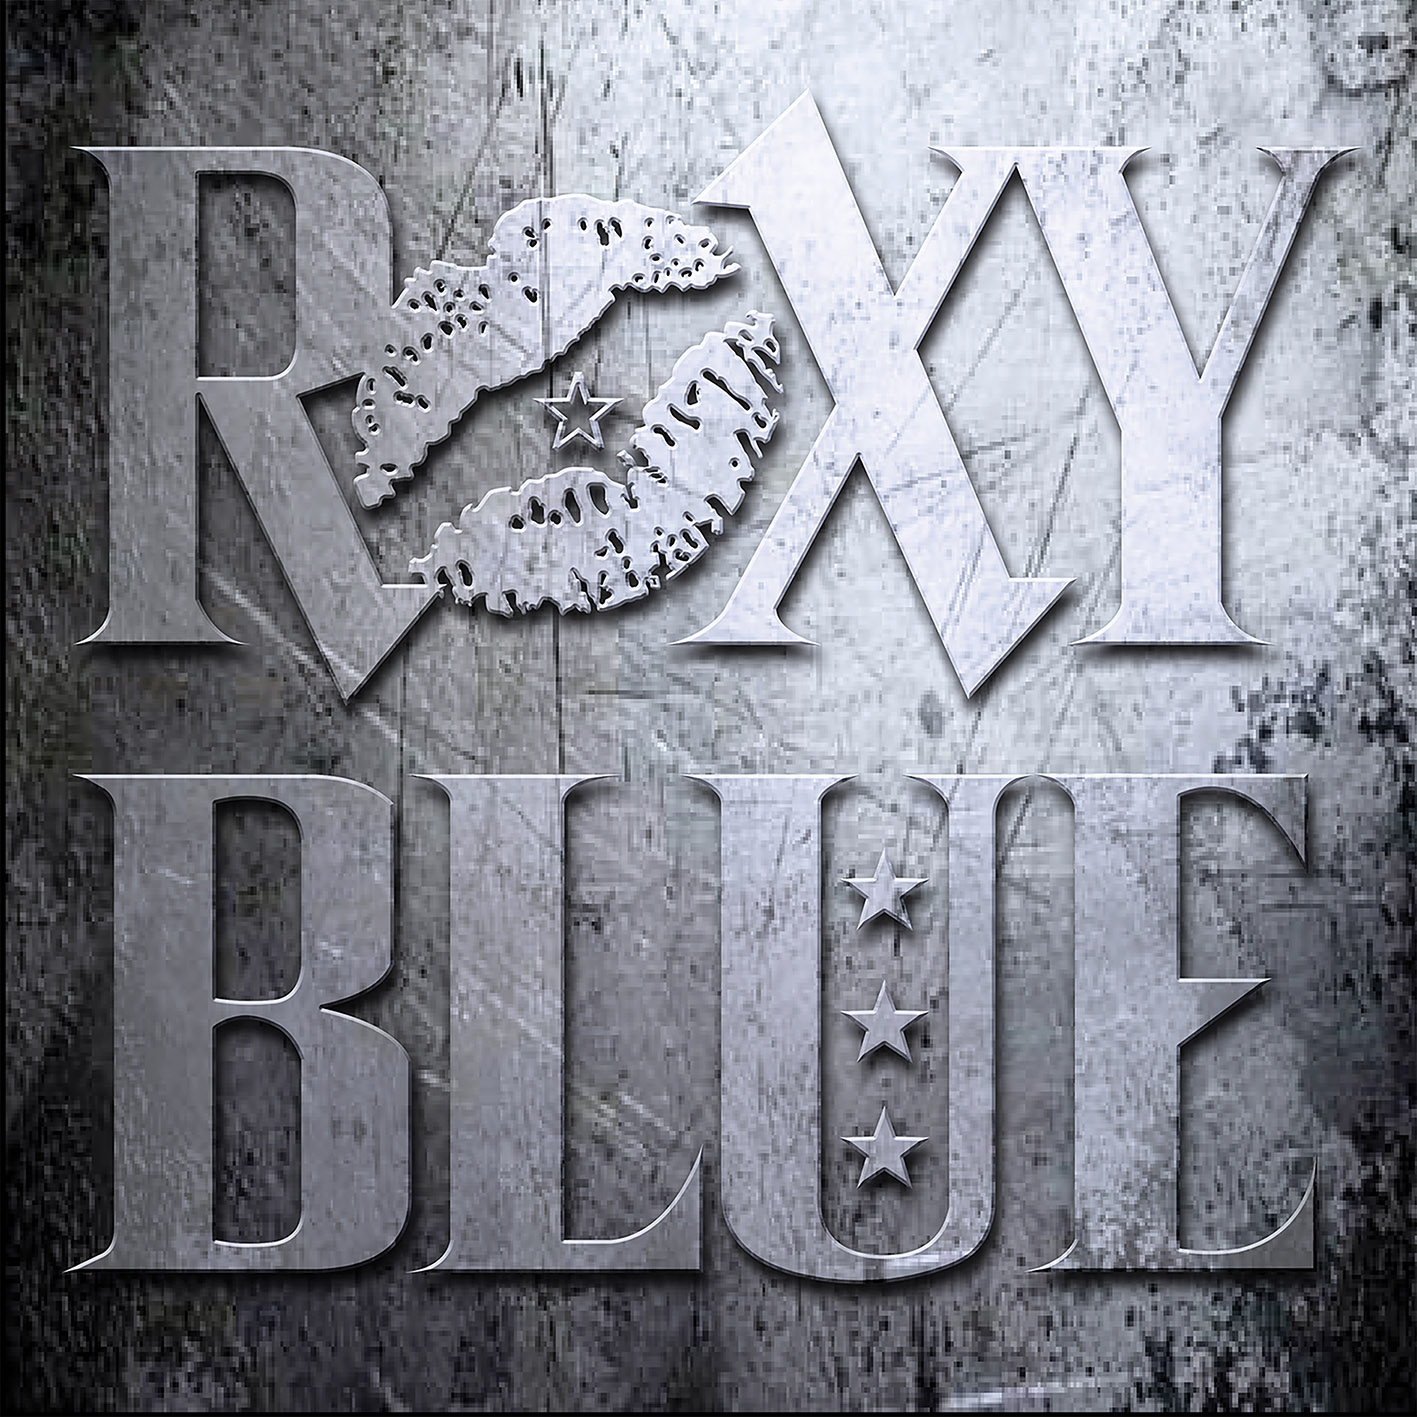 Roxy Blue - “Roxy Blue”